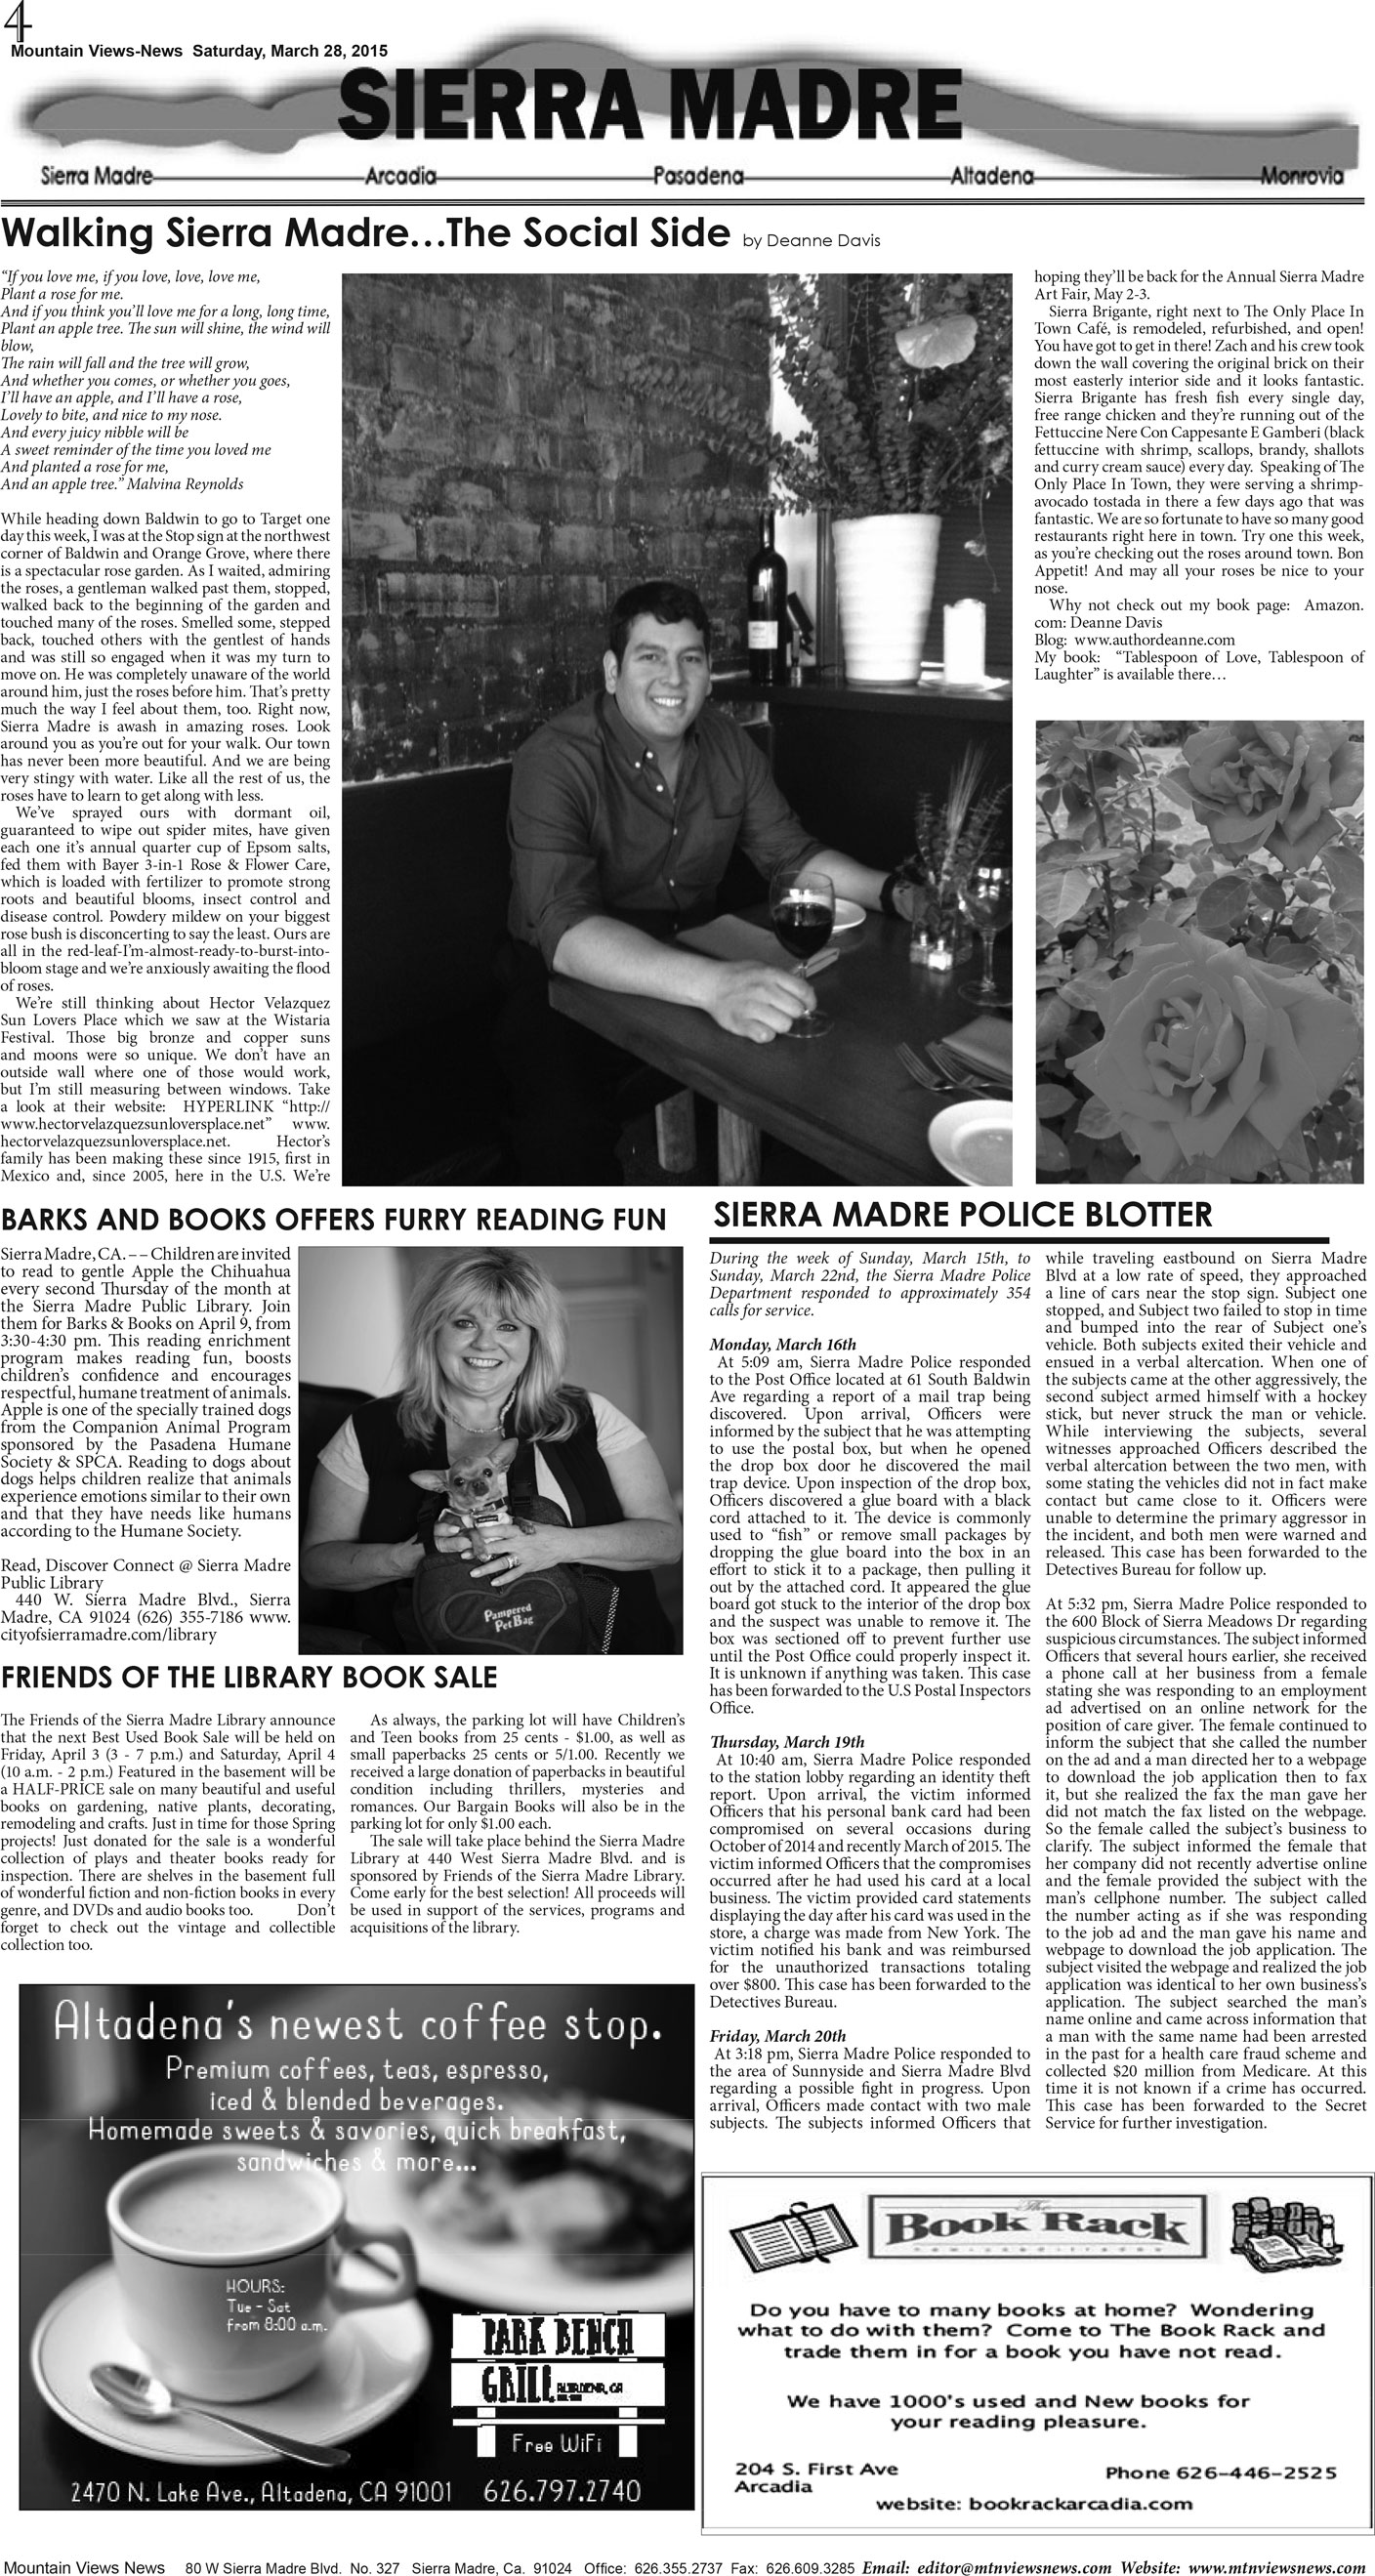 MVNews this week:  Page 4